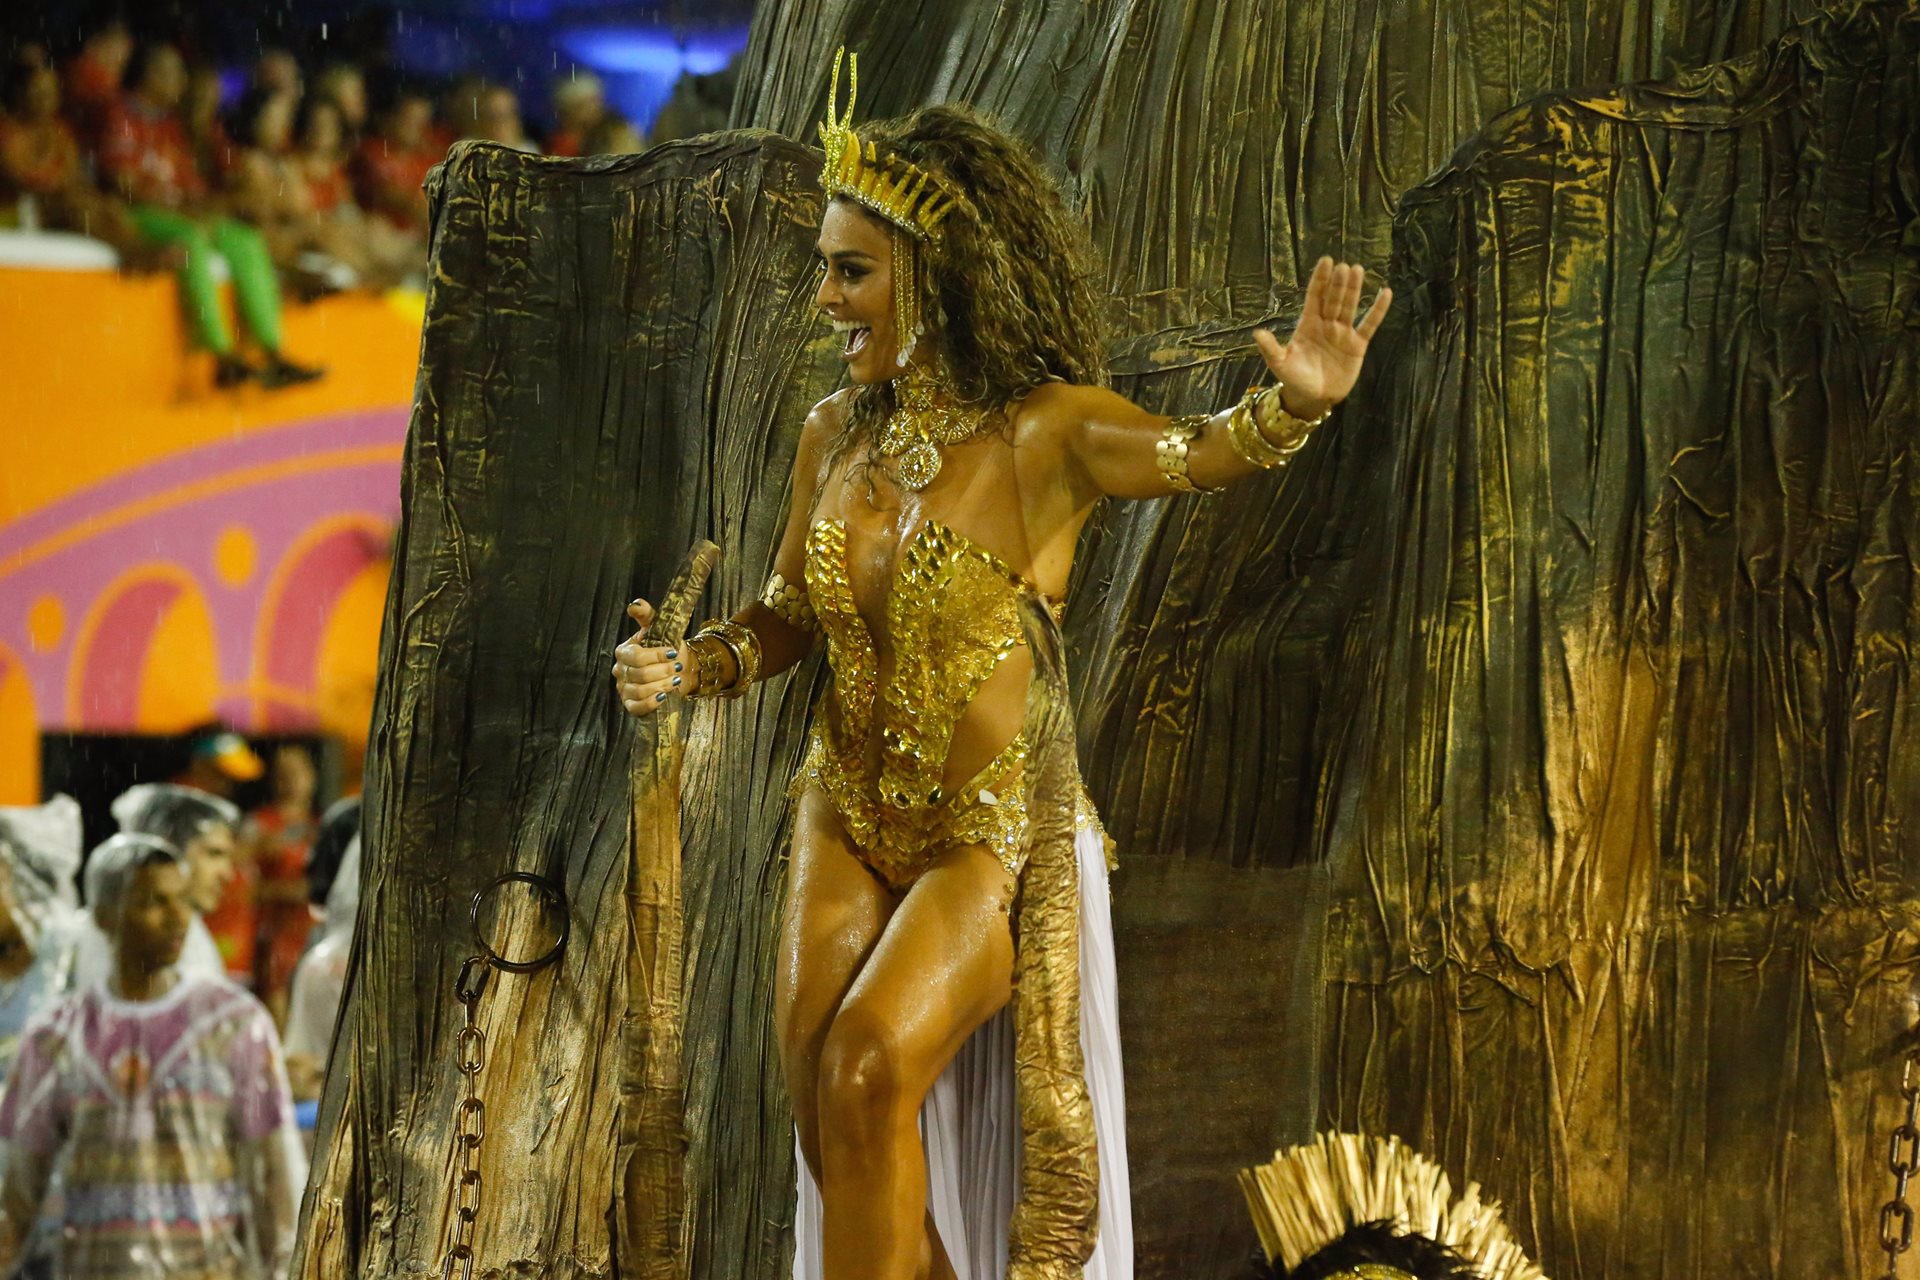 David Ferrer y Rafa Nadal participan del carnaval de Río de Janeiro, en la imagen una mujer desfila con plumas y de colores durante el desfile muy sugerente